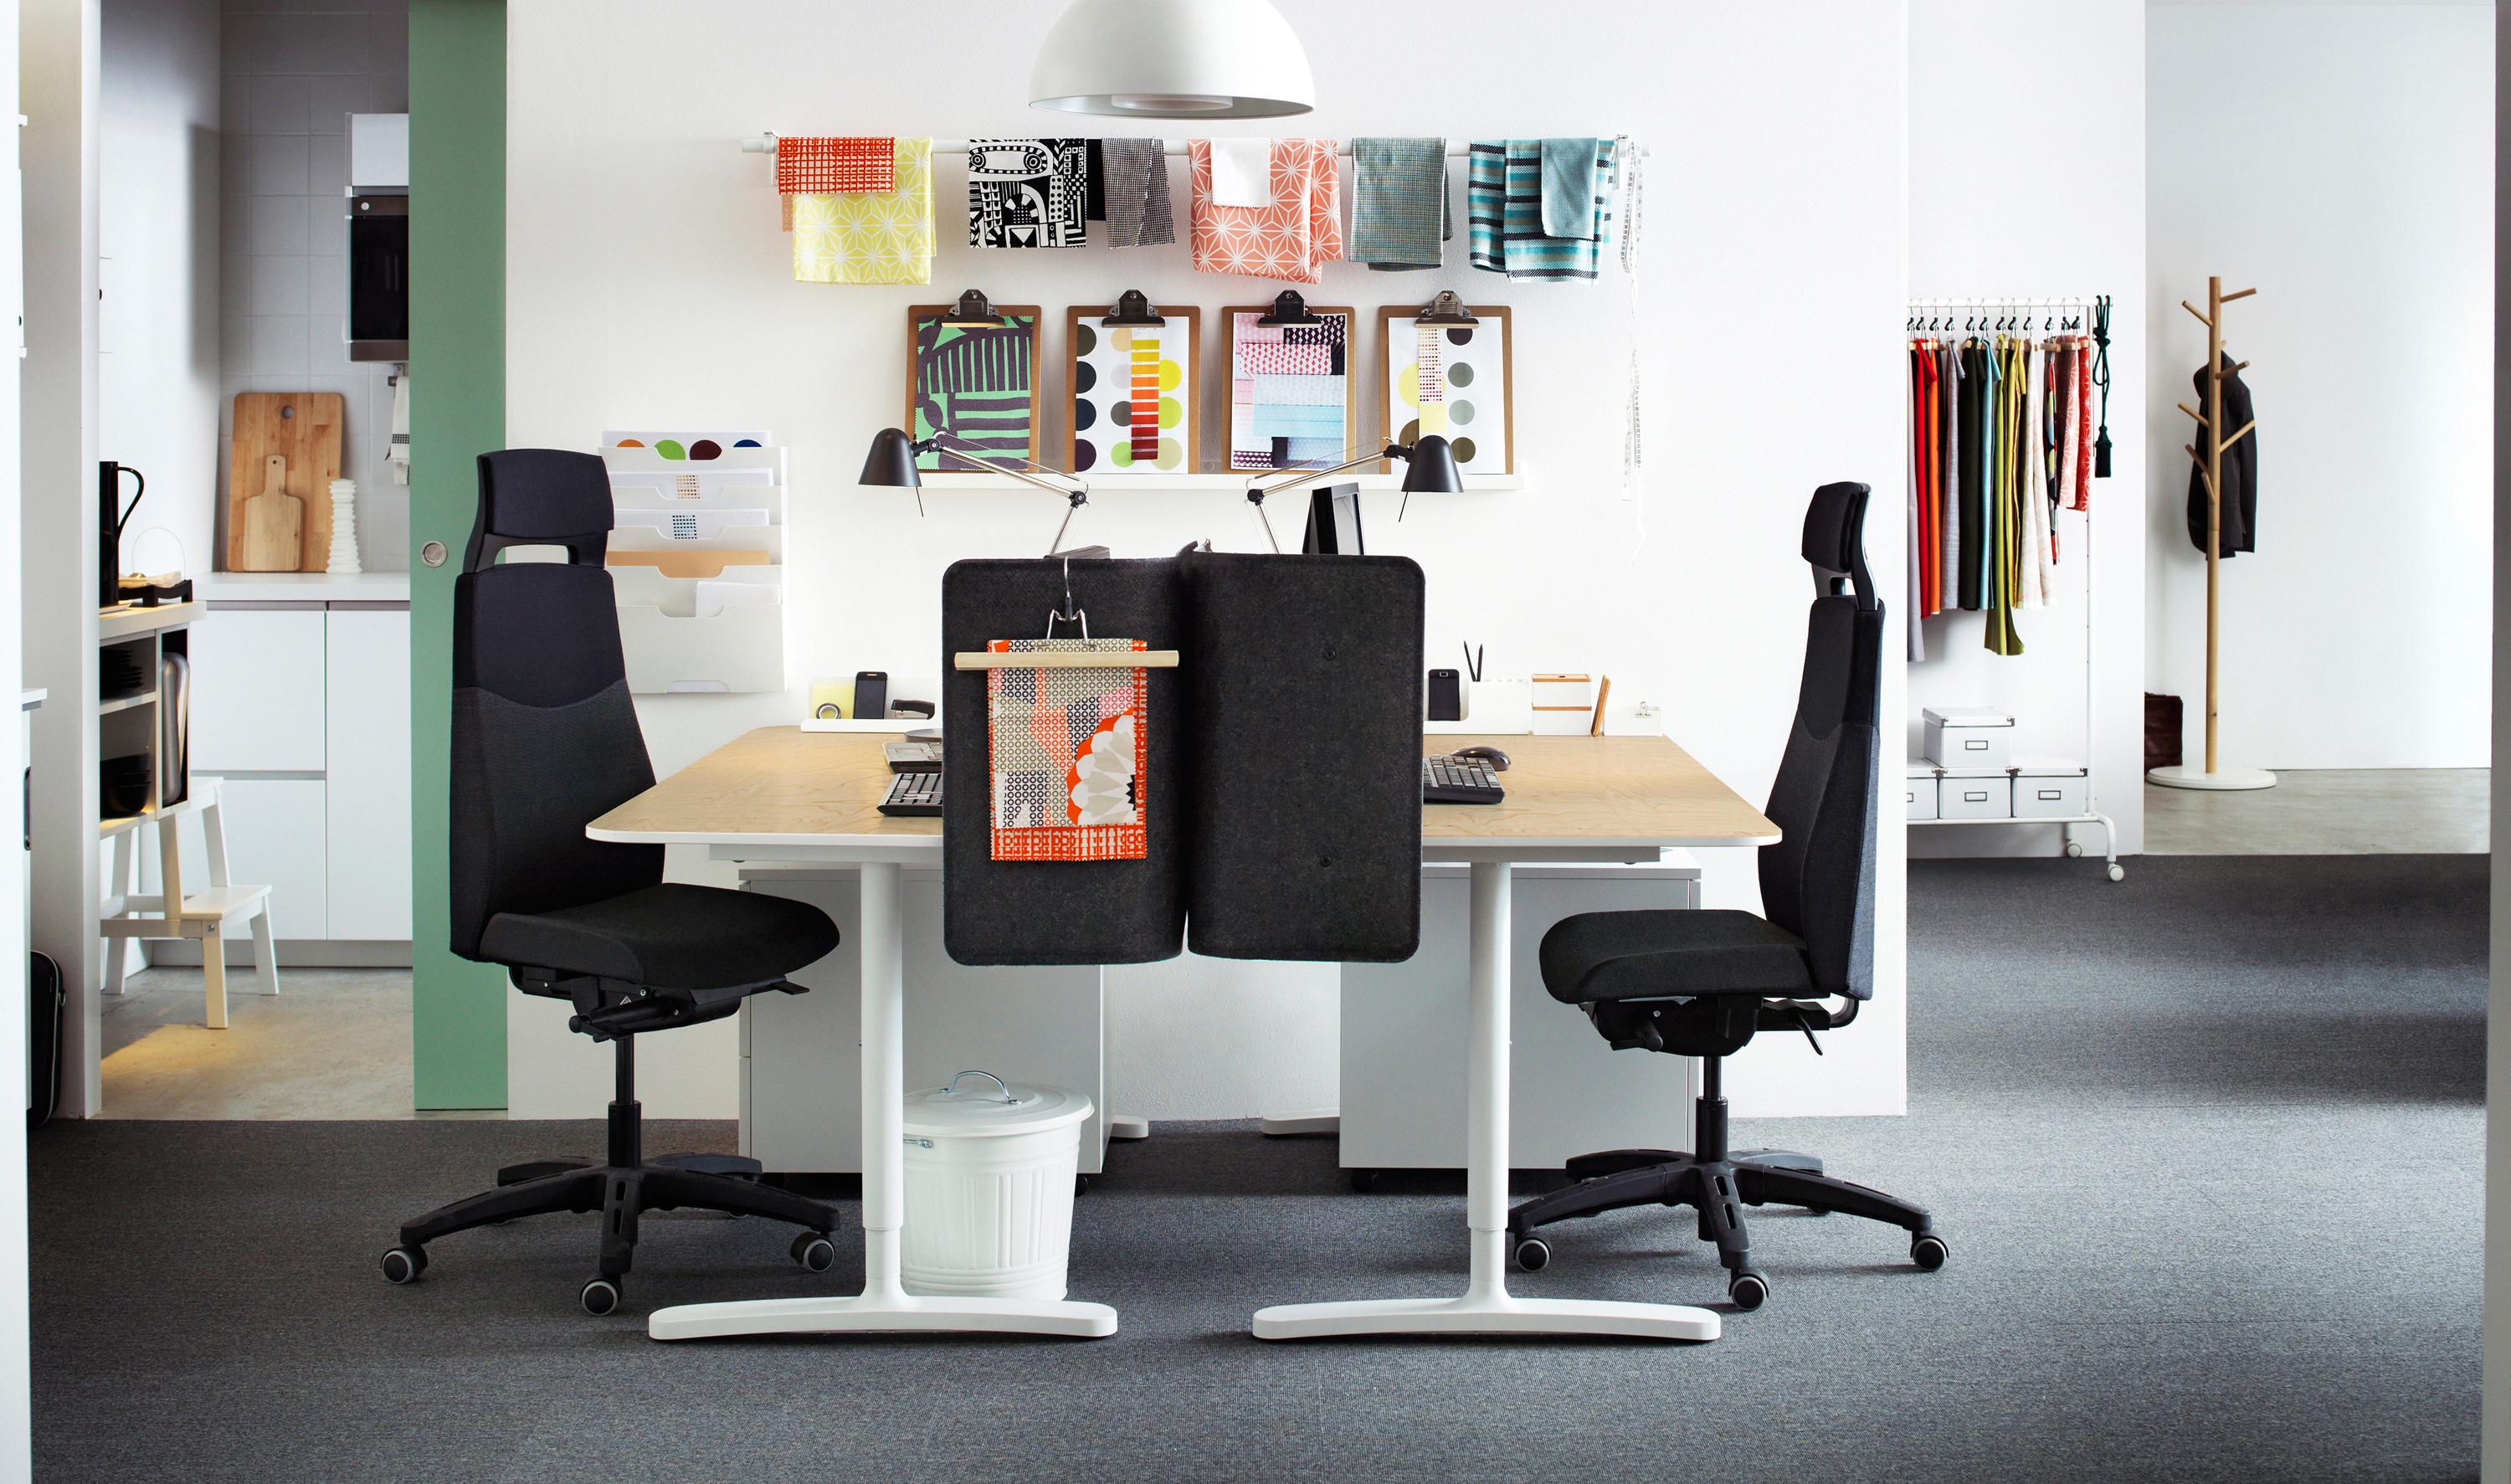 Home Office für zwei Personen einrichten #schreibtisch #hängeleuchte #holzschreibtisch ©Inter Ikea Systems B.V.